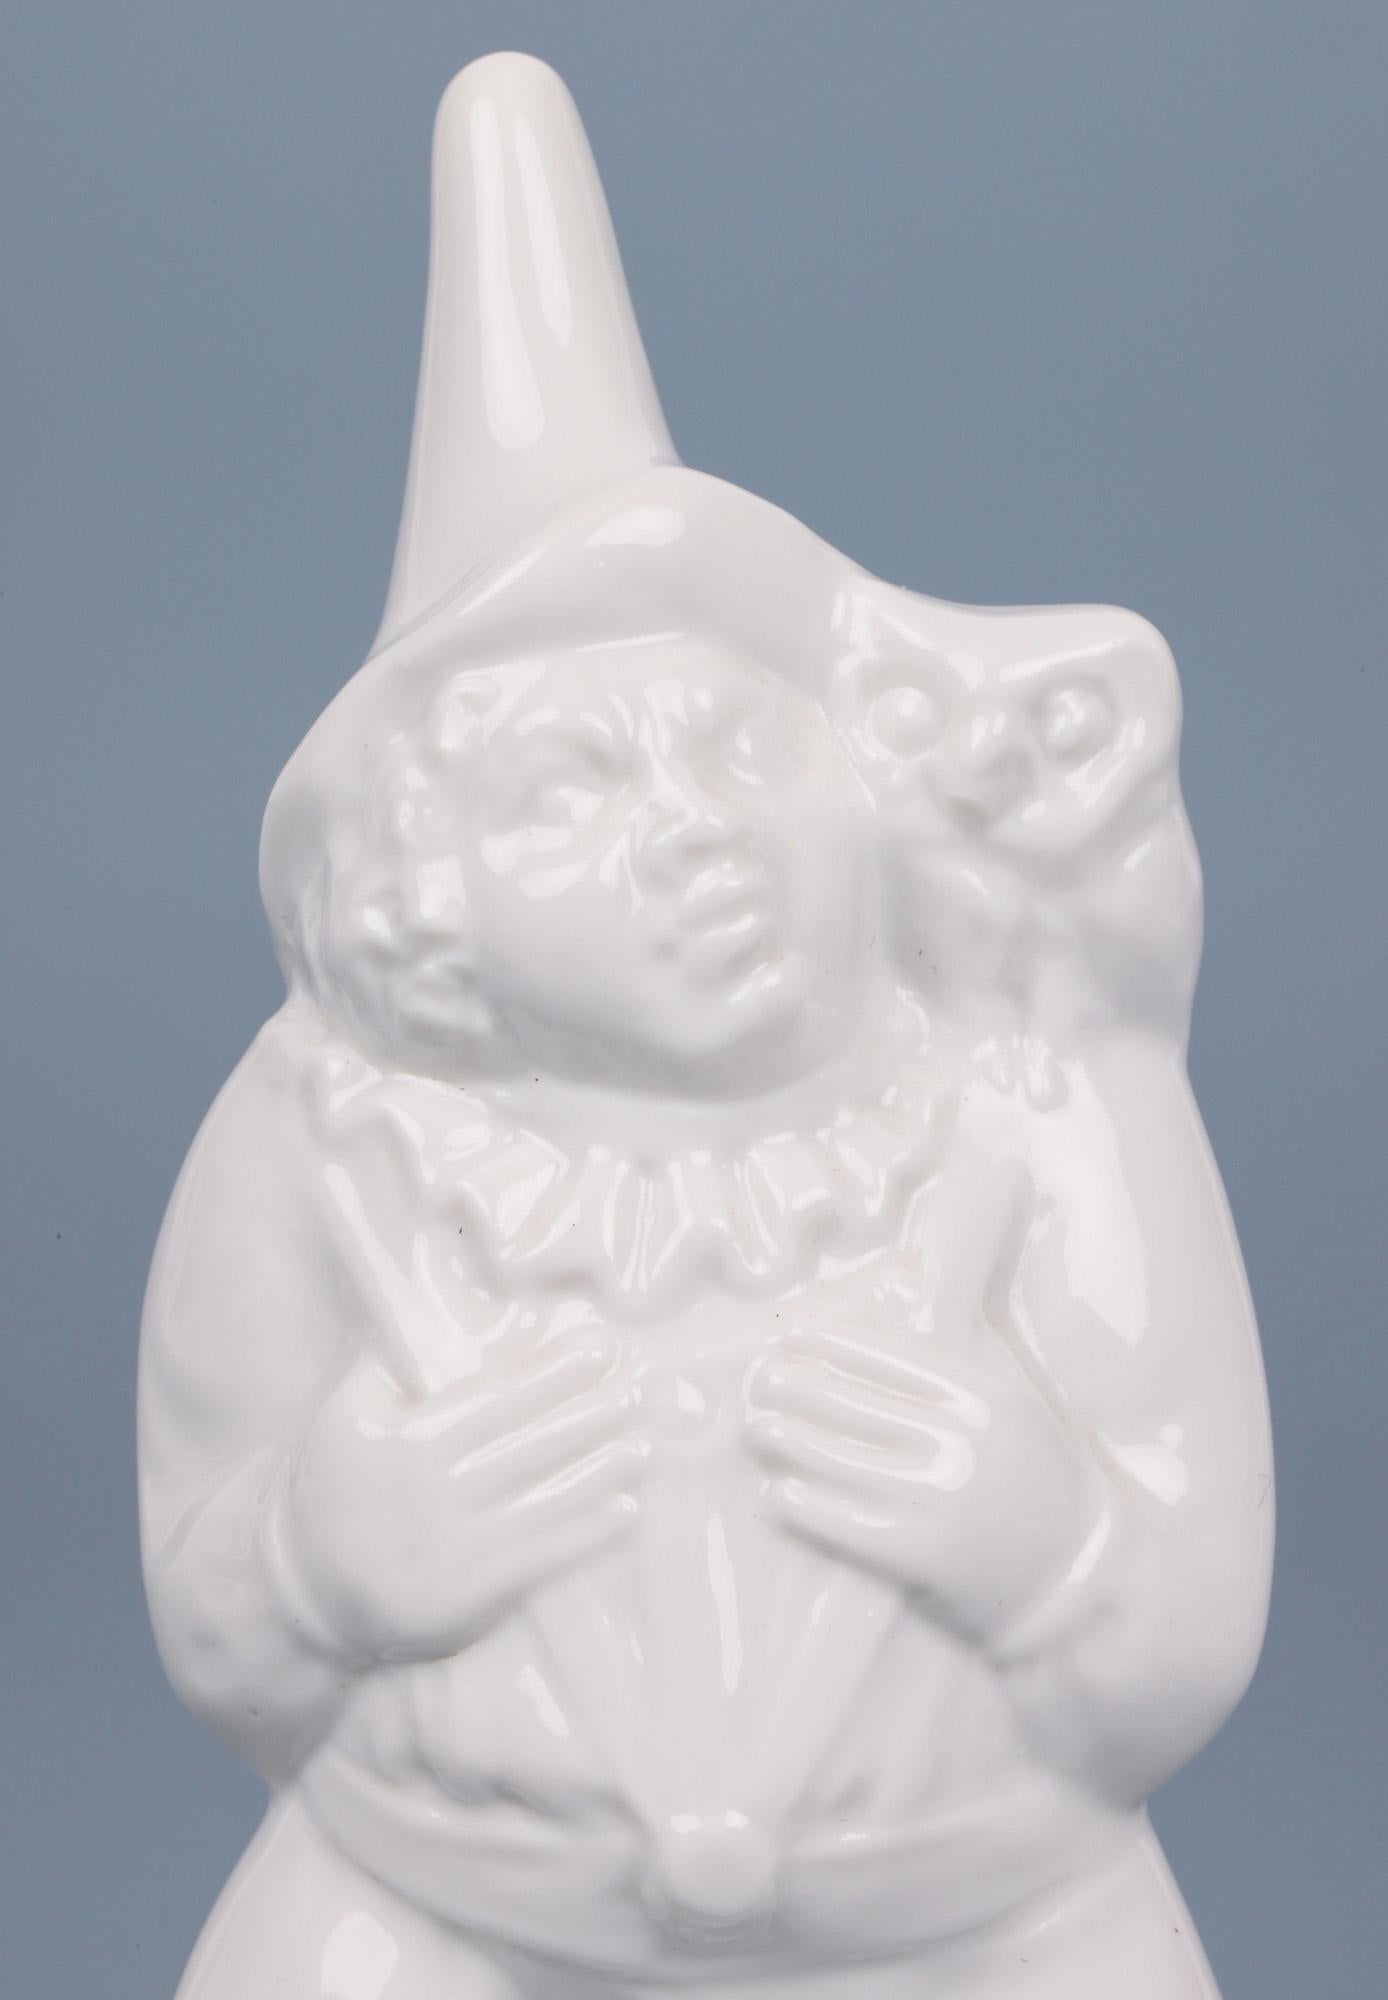 Très belle figurine en porcelaine de Meissen blanc de chine représentant un bouffon avec un singe et un hibou, datant du 20e siècle. La figurine repose sur une base étroite de forme ovale et porte une veste avec un col à volants et un chapeau